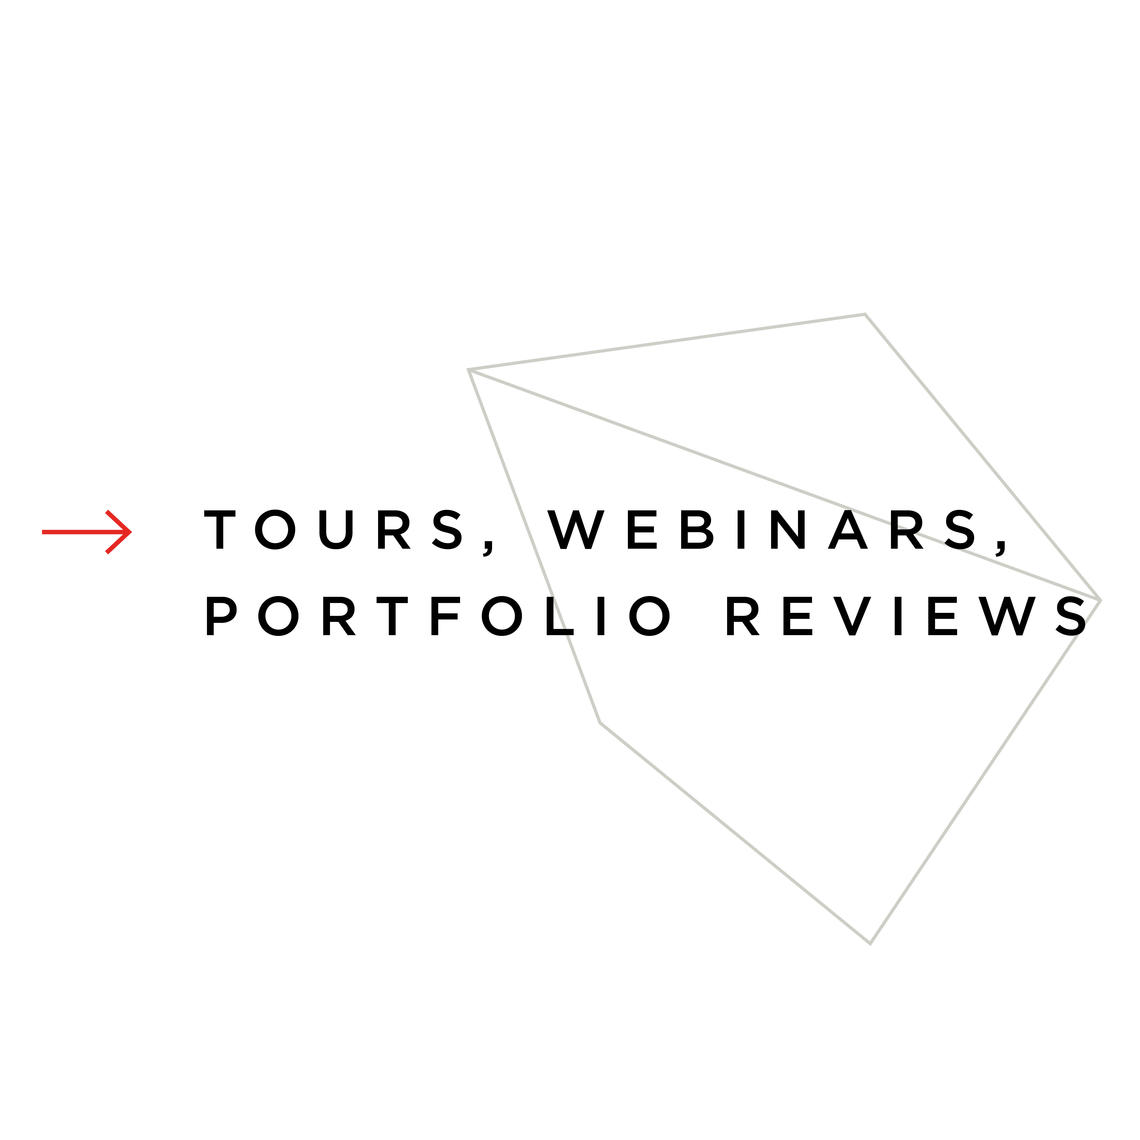 Tours, Webinars, Portfolio Reviews